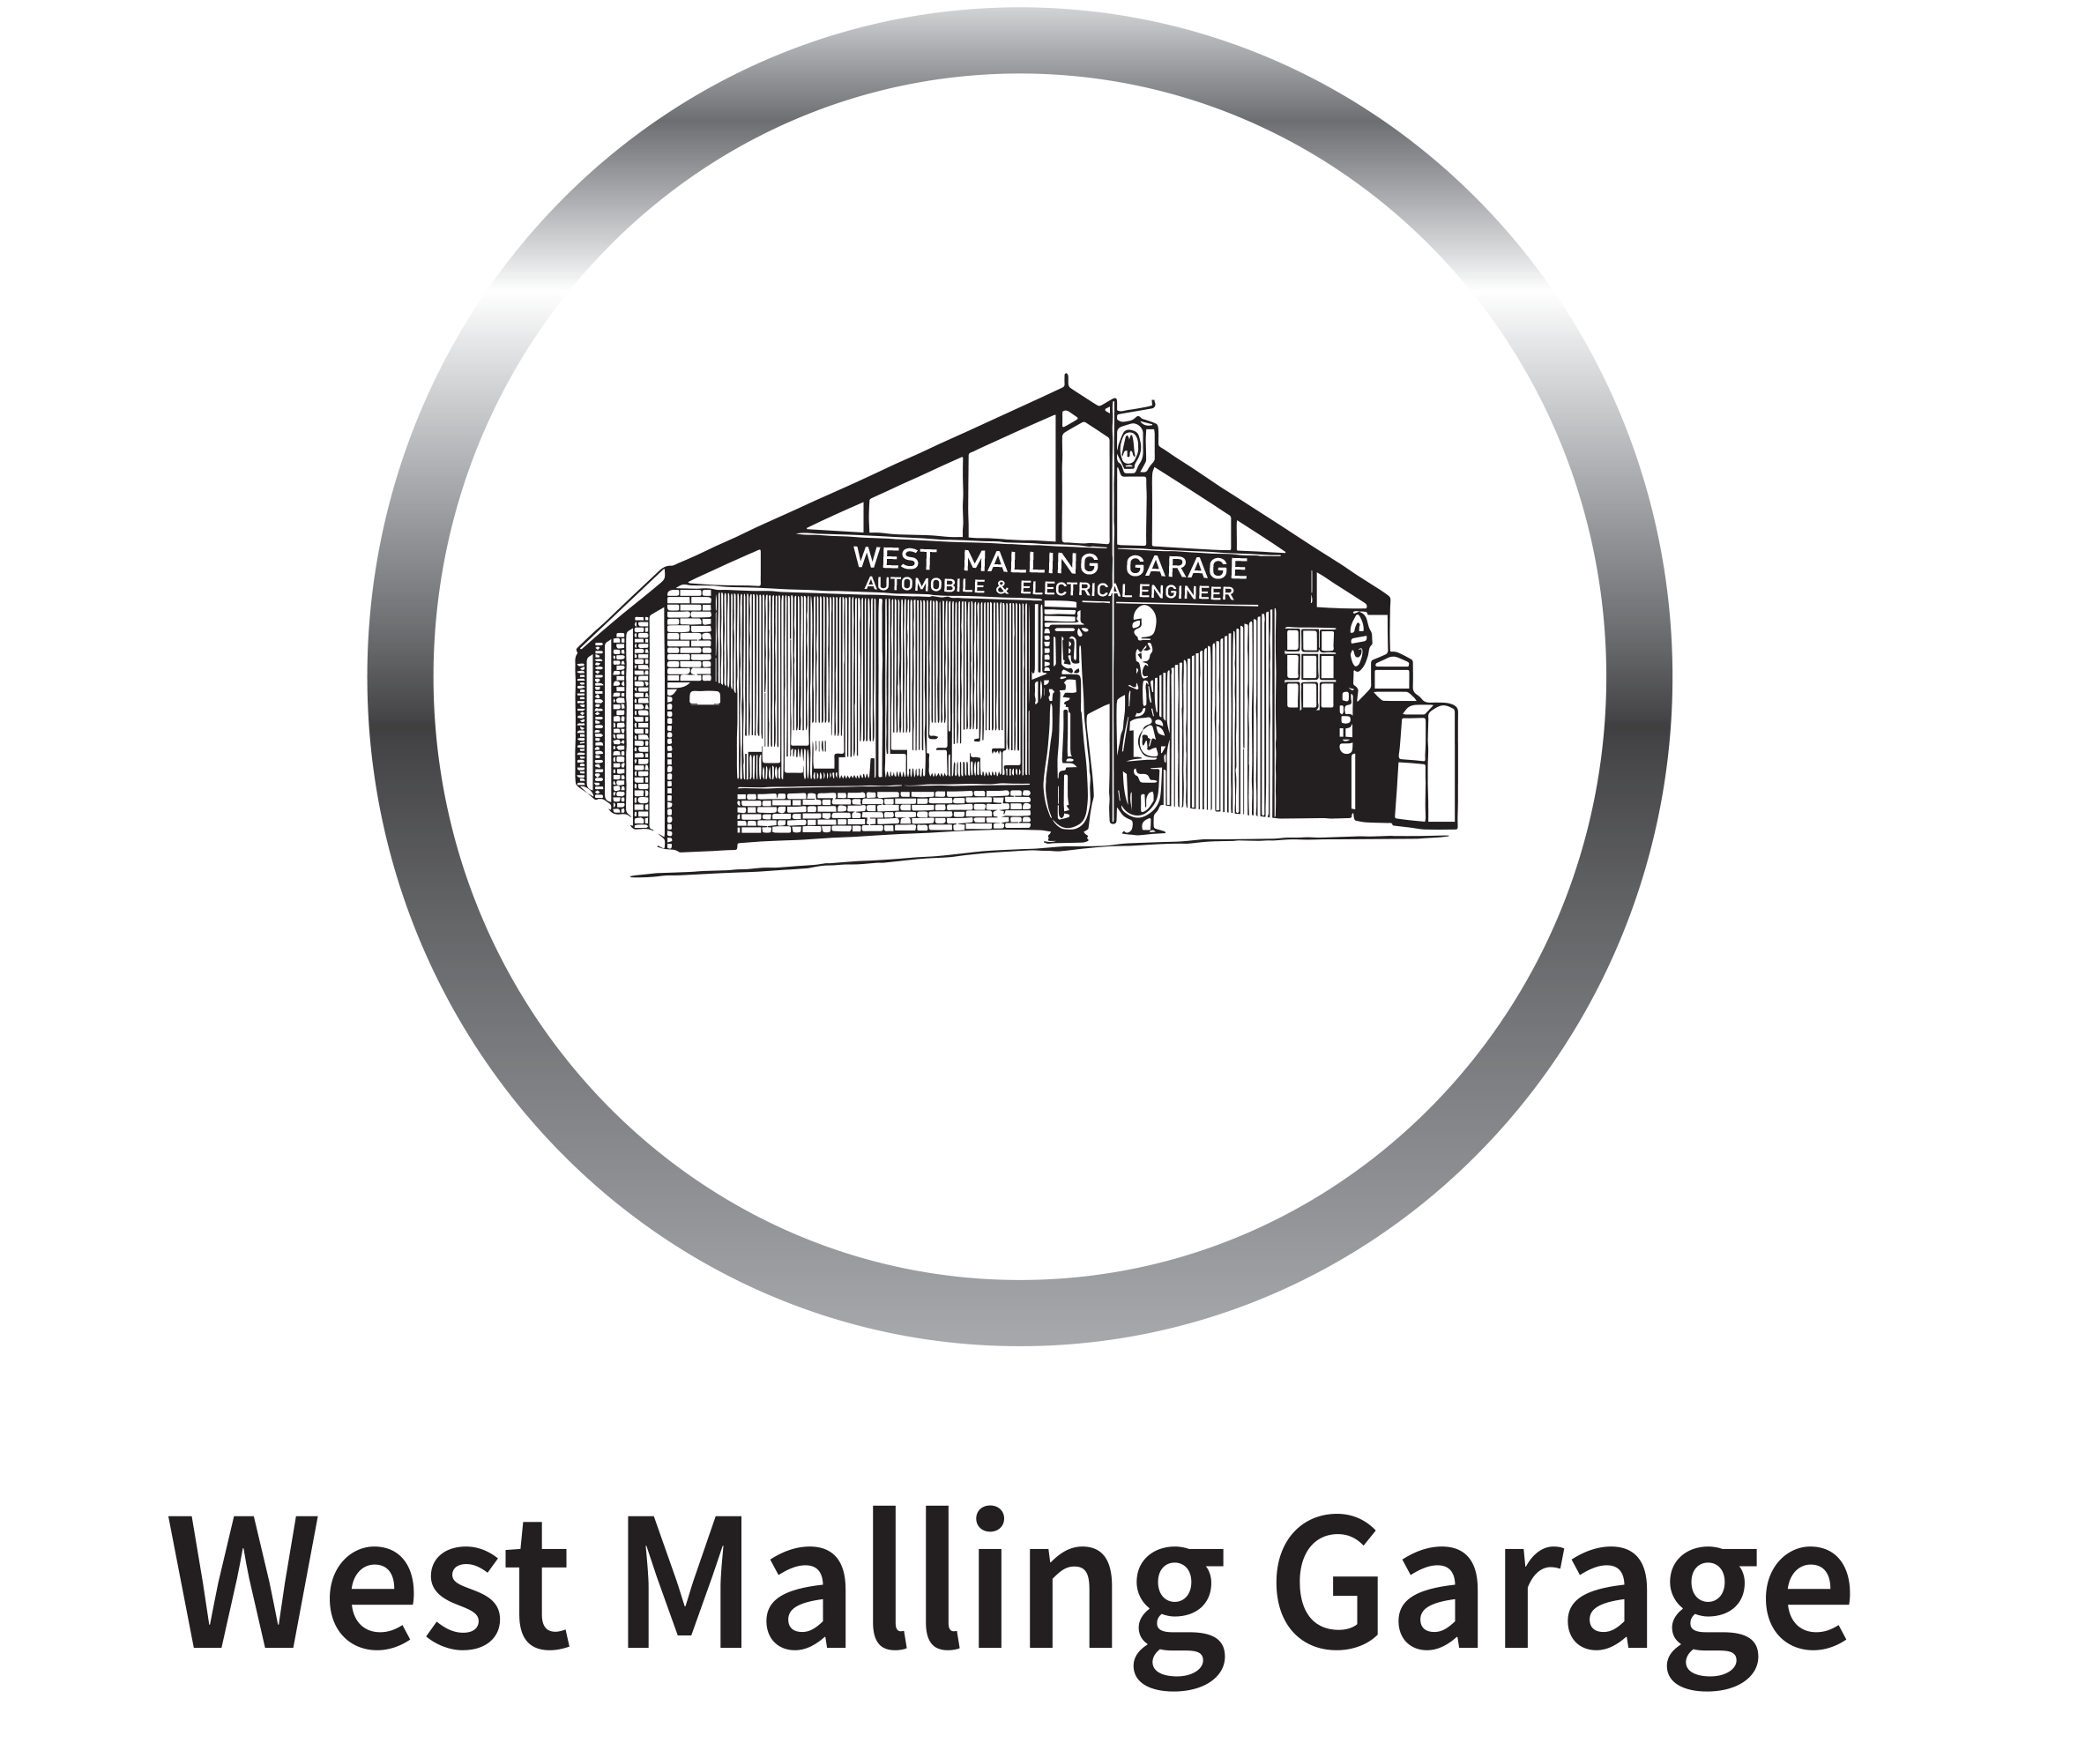 West Malling Garage